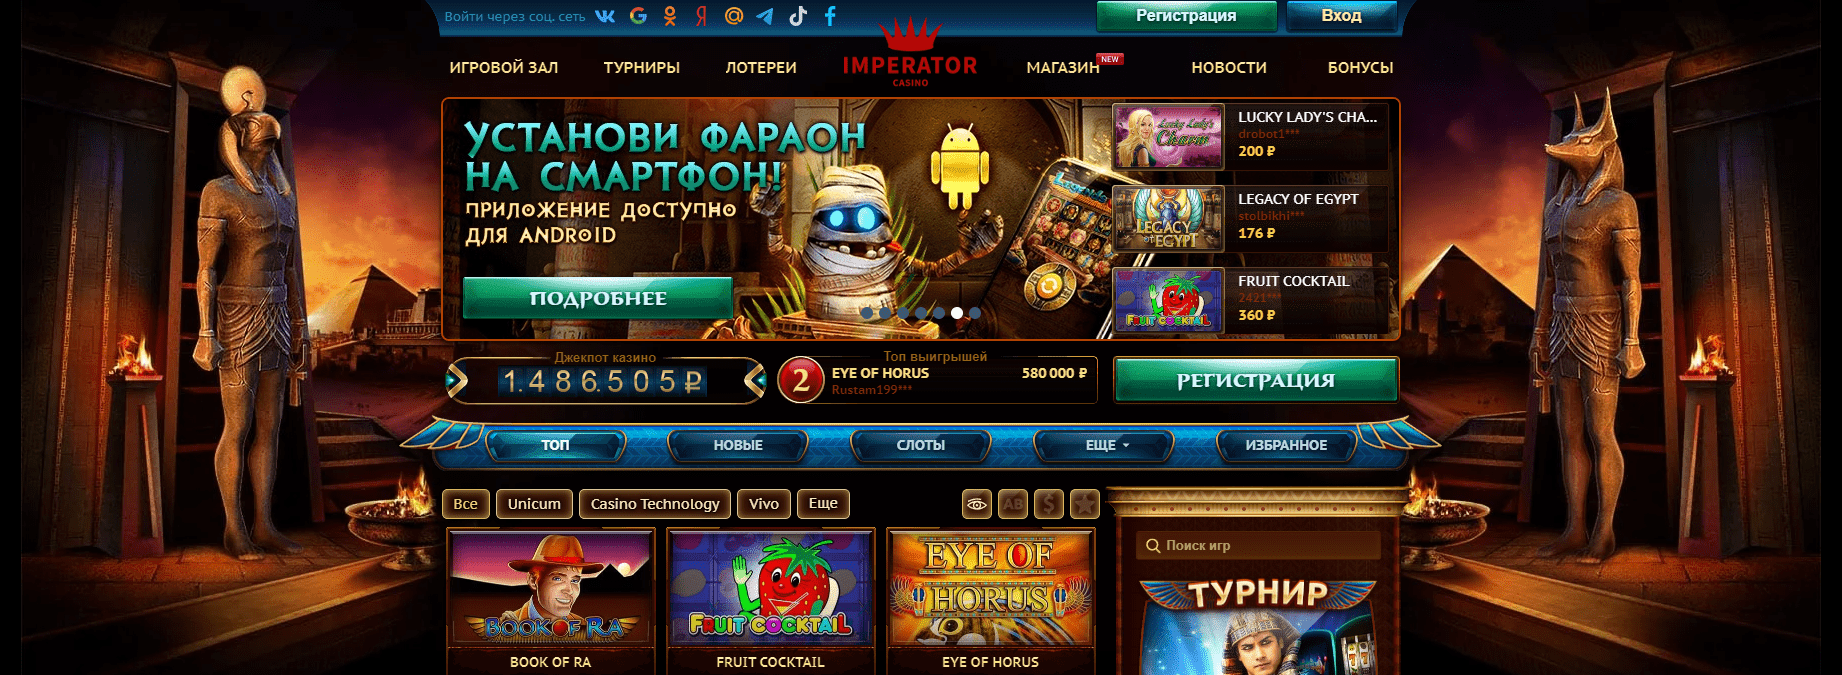 Official casino Imperator website